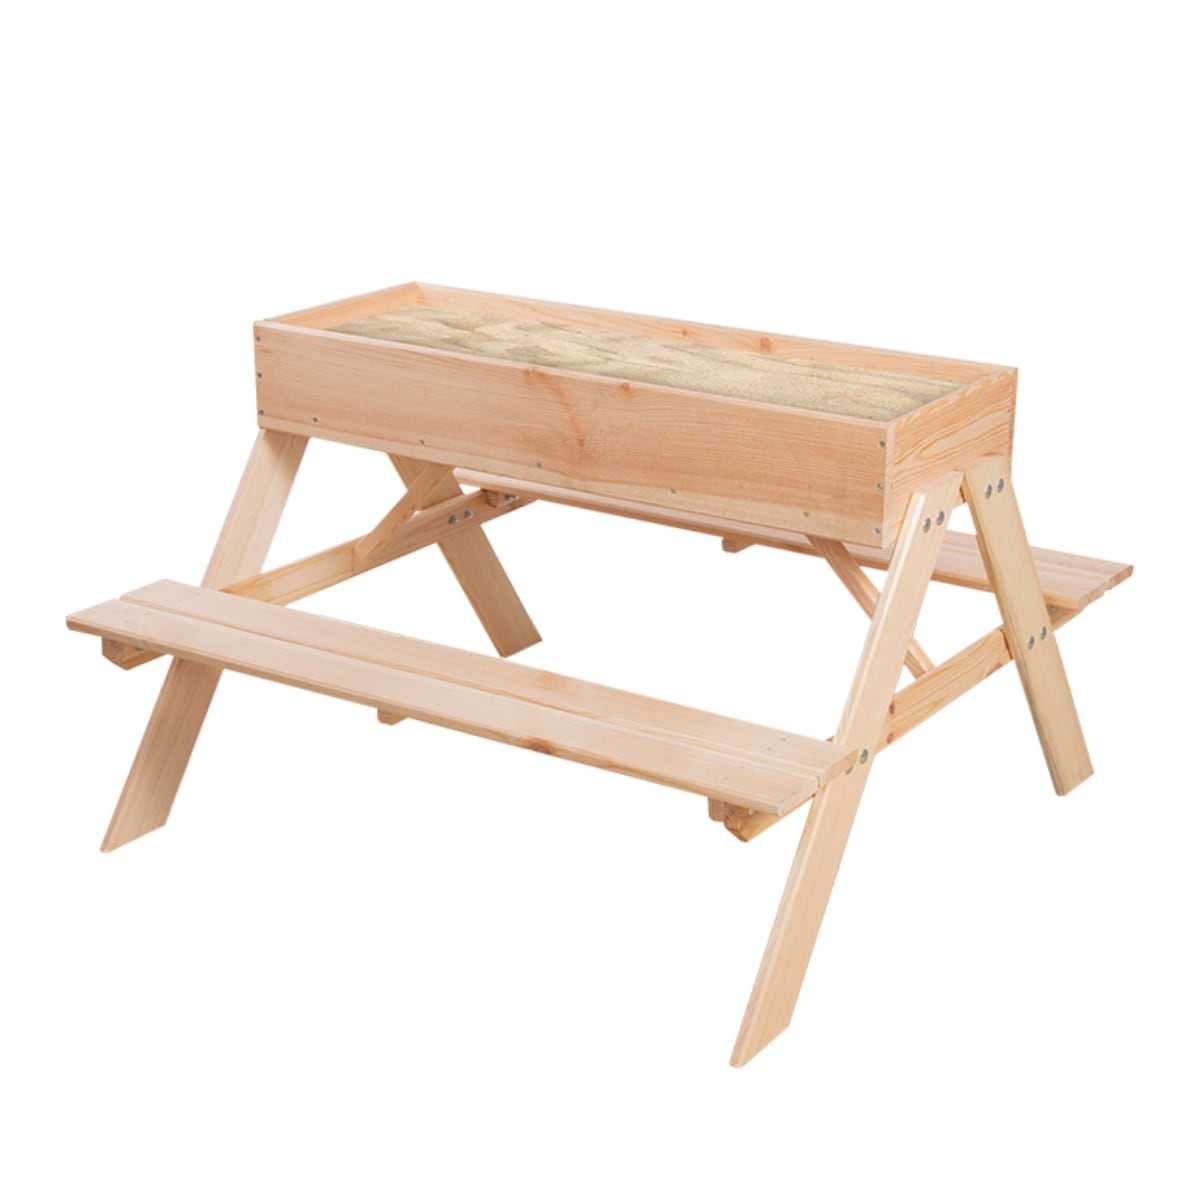 Table/bac à sable en bois extérieur pour enfant avec couvercle - Exit